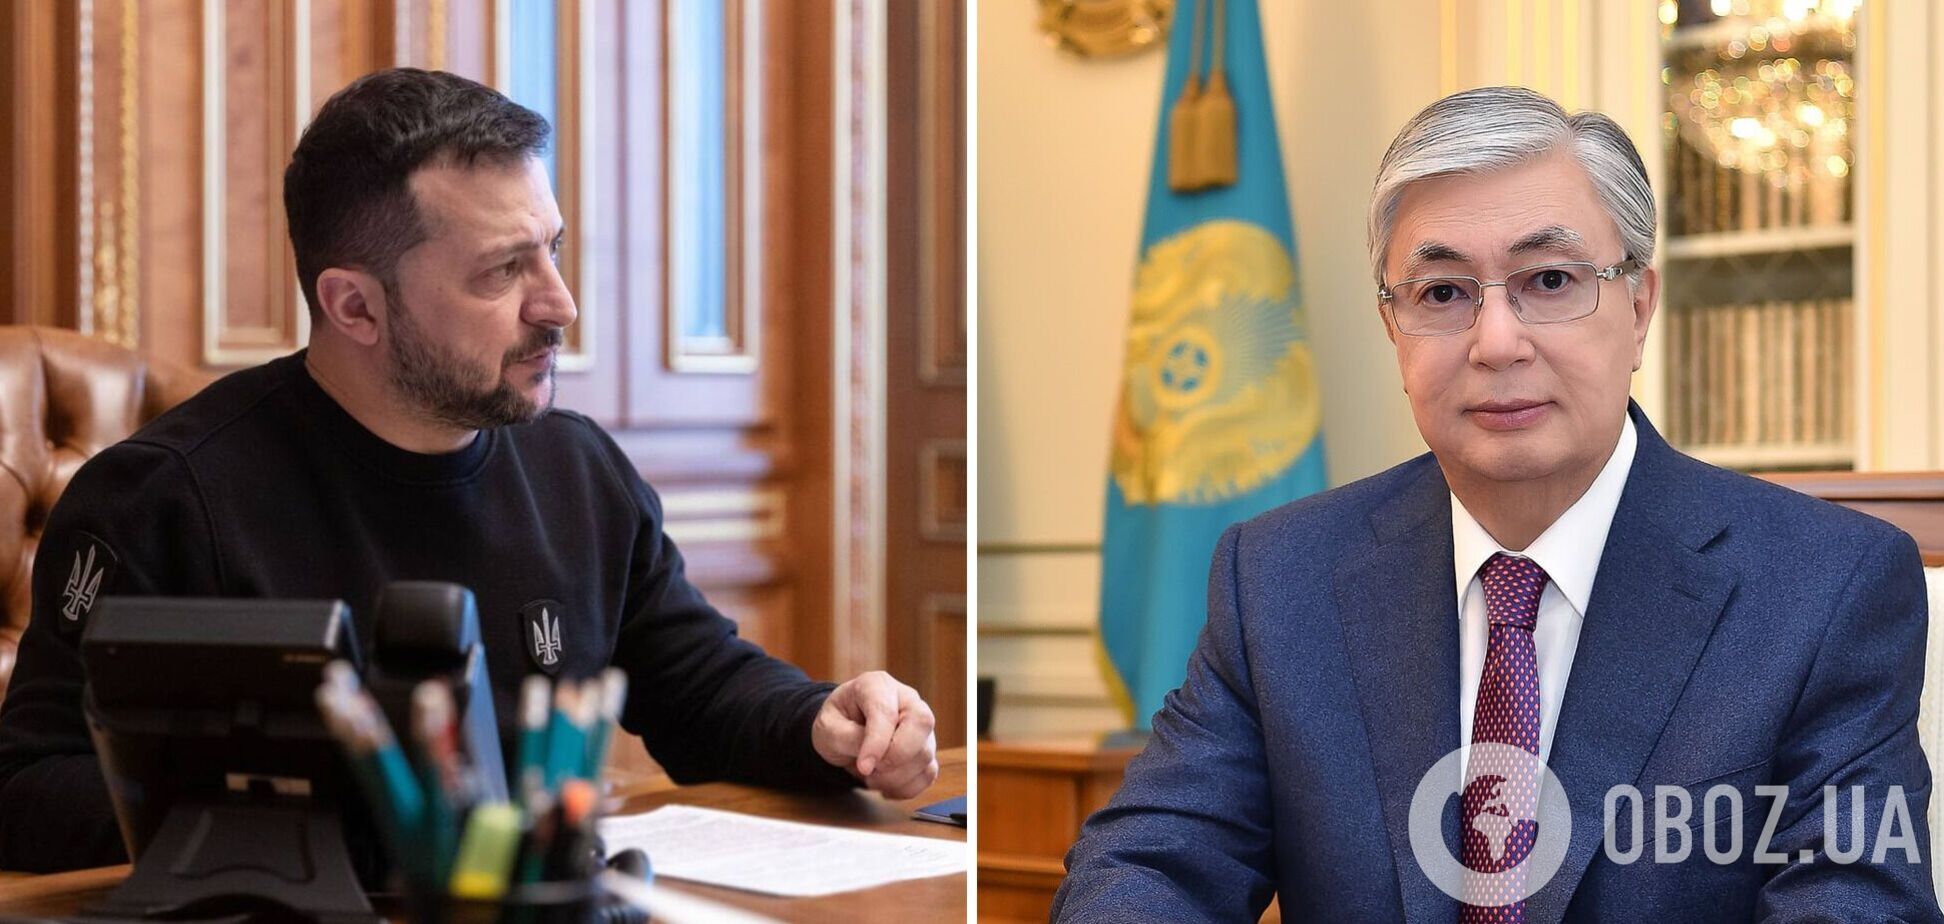 Говорили про формулу миру і не тільки: Зеленський провів переговори з президентом Казахстану